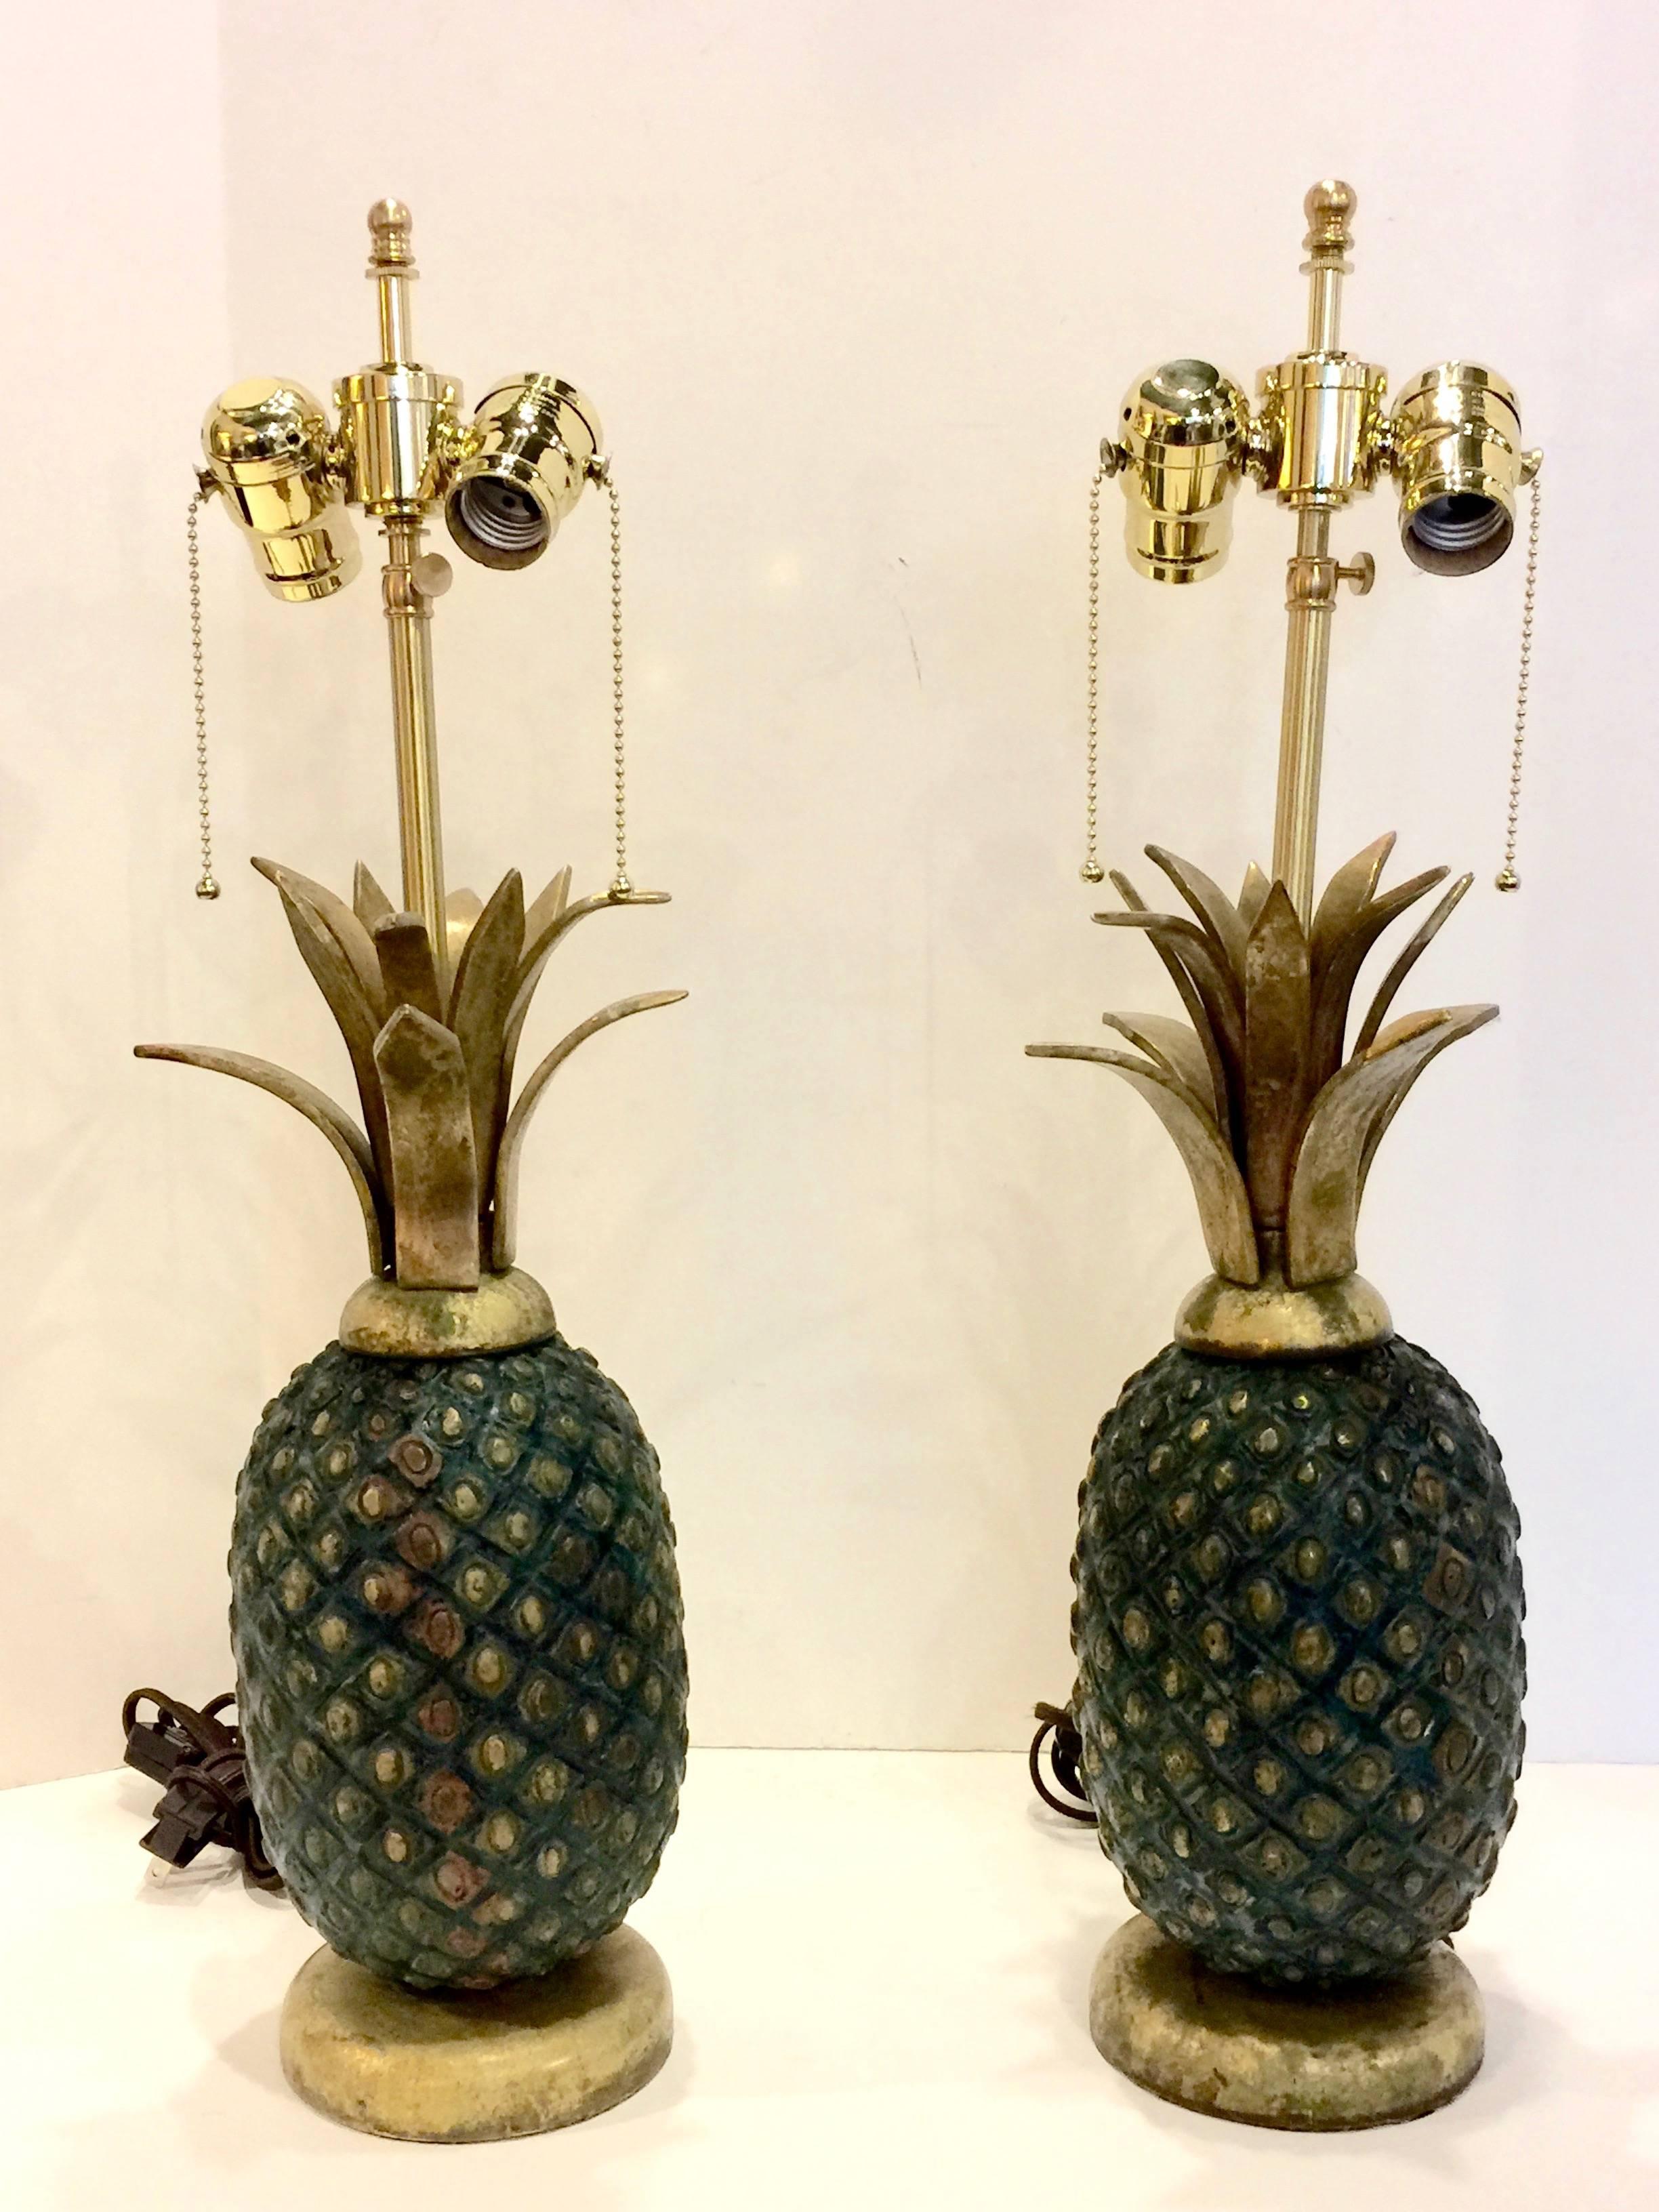 Il s'agit d'une superbe paire de lampes ananas réalisées par le célèbre maître moderniste mexicain, Pepe Mendoza. Ces lourdes lampes ont été fabriquées en laiton massif et sont en excellent état d'origine, à l'exception d'une mise à jour avec de